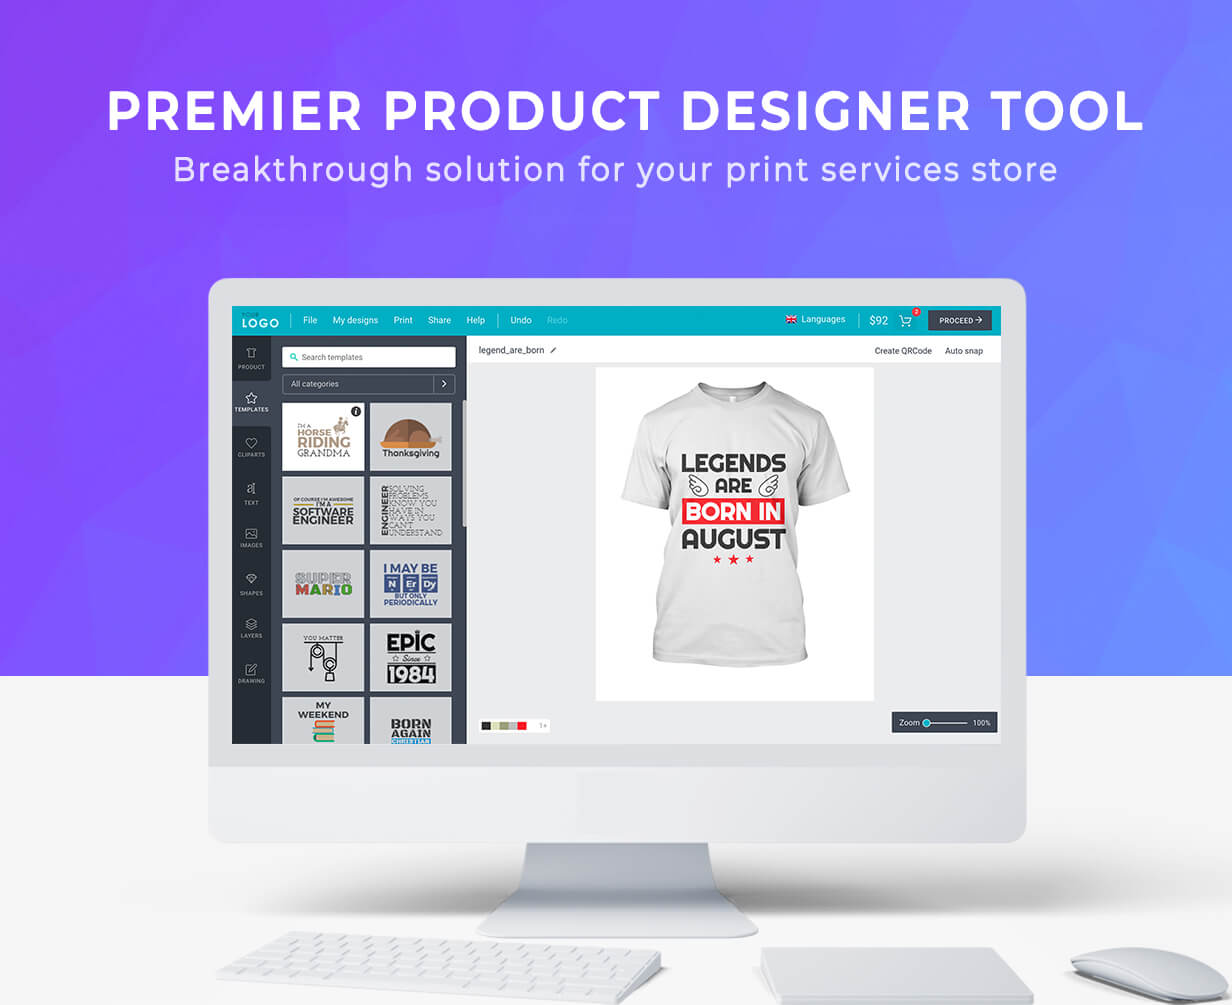 افزونه Lumise Product Designer چیست؟